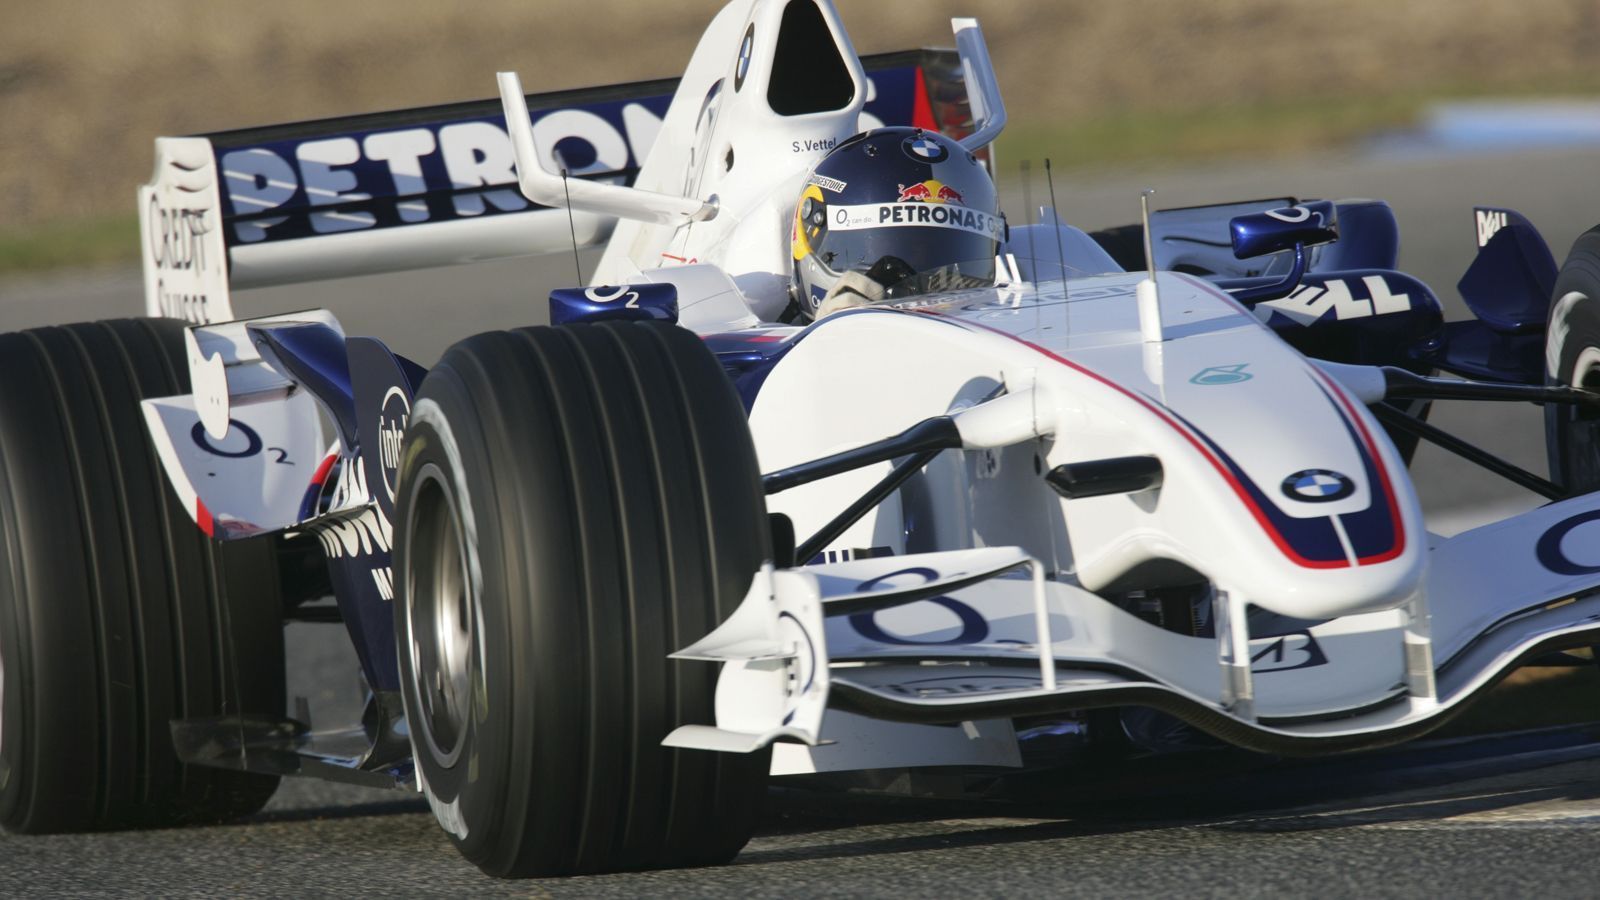 
                <strong>Rasanter Aufstieg in der Formel 1</strong><br>
                Im Rahmen des Rennens in der Türkei 2006 durfte er im Training ran und fuhr als jüngster Fahrer auf Platz eins. "Das war für mich der entscheidende Moment", sagte Vettel rückblickend. Im Juni 2007 feierte er sein Renndebüt, in Indianapolis wurde er starker Achter. Red Bull schnappte sich daraufhin Vettel, der noch 2007 zum Schwesterteam Toro Rosso wechselte.
              